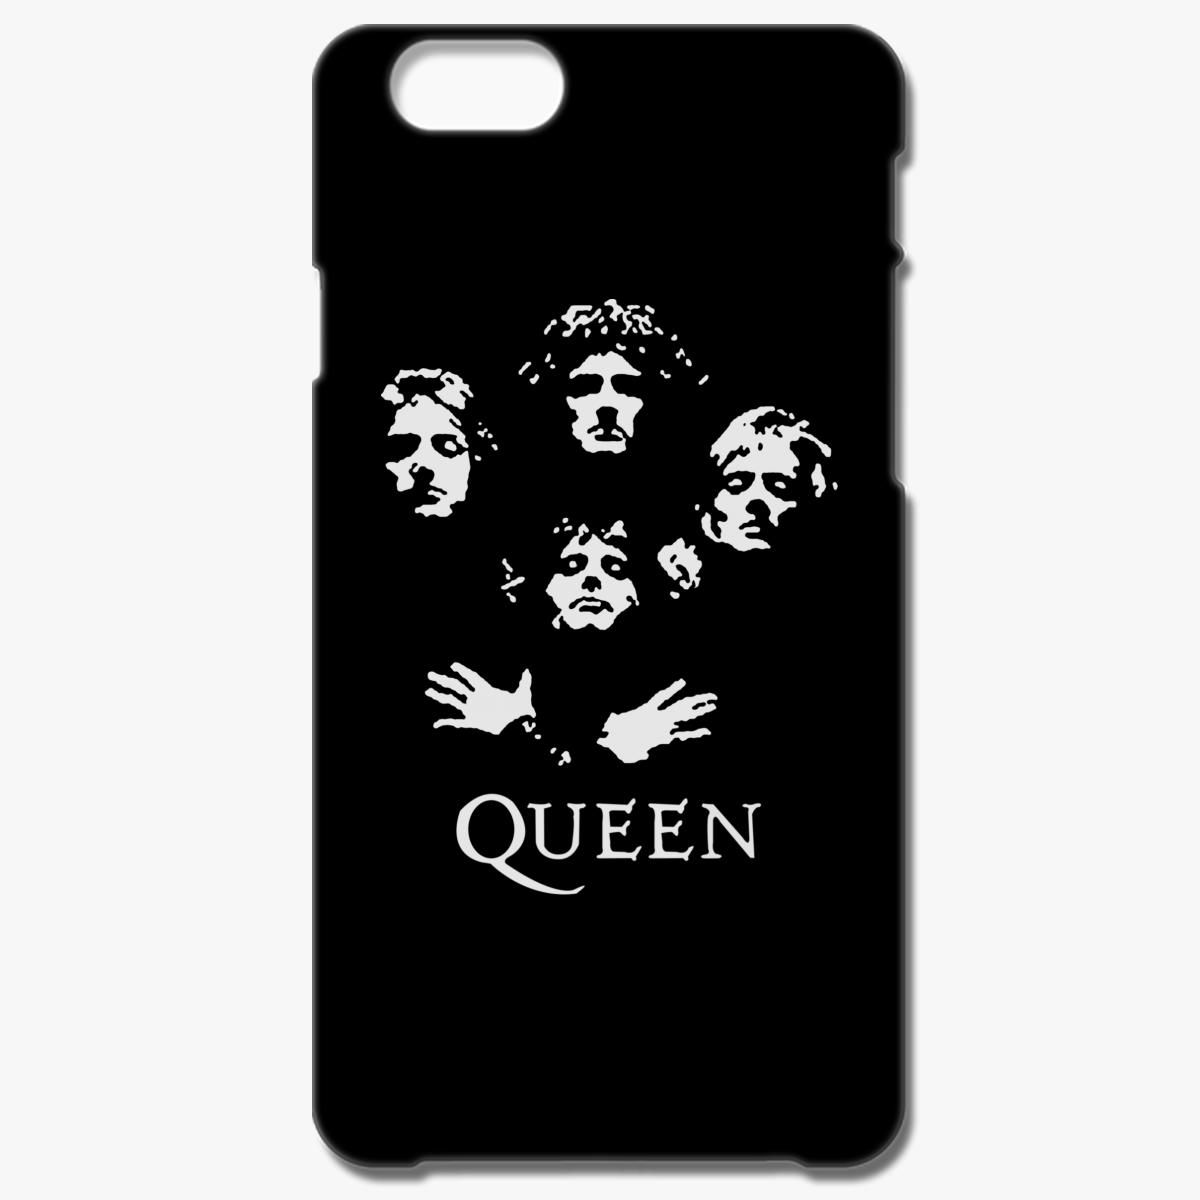 Queen Band iPhone 6/6S Case - Customon